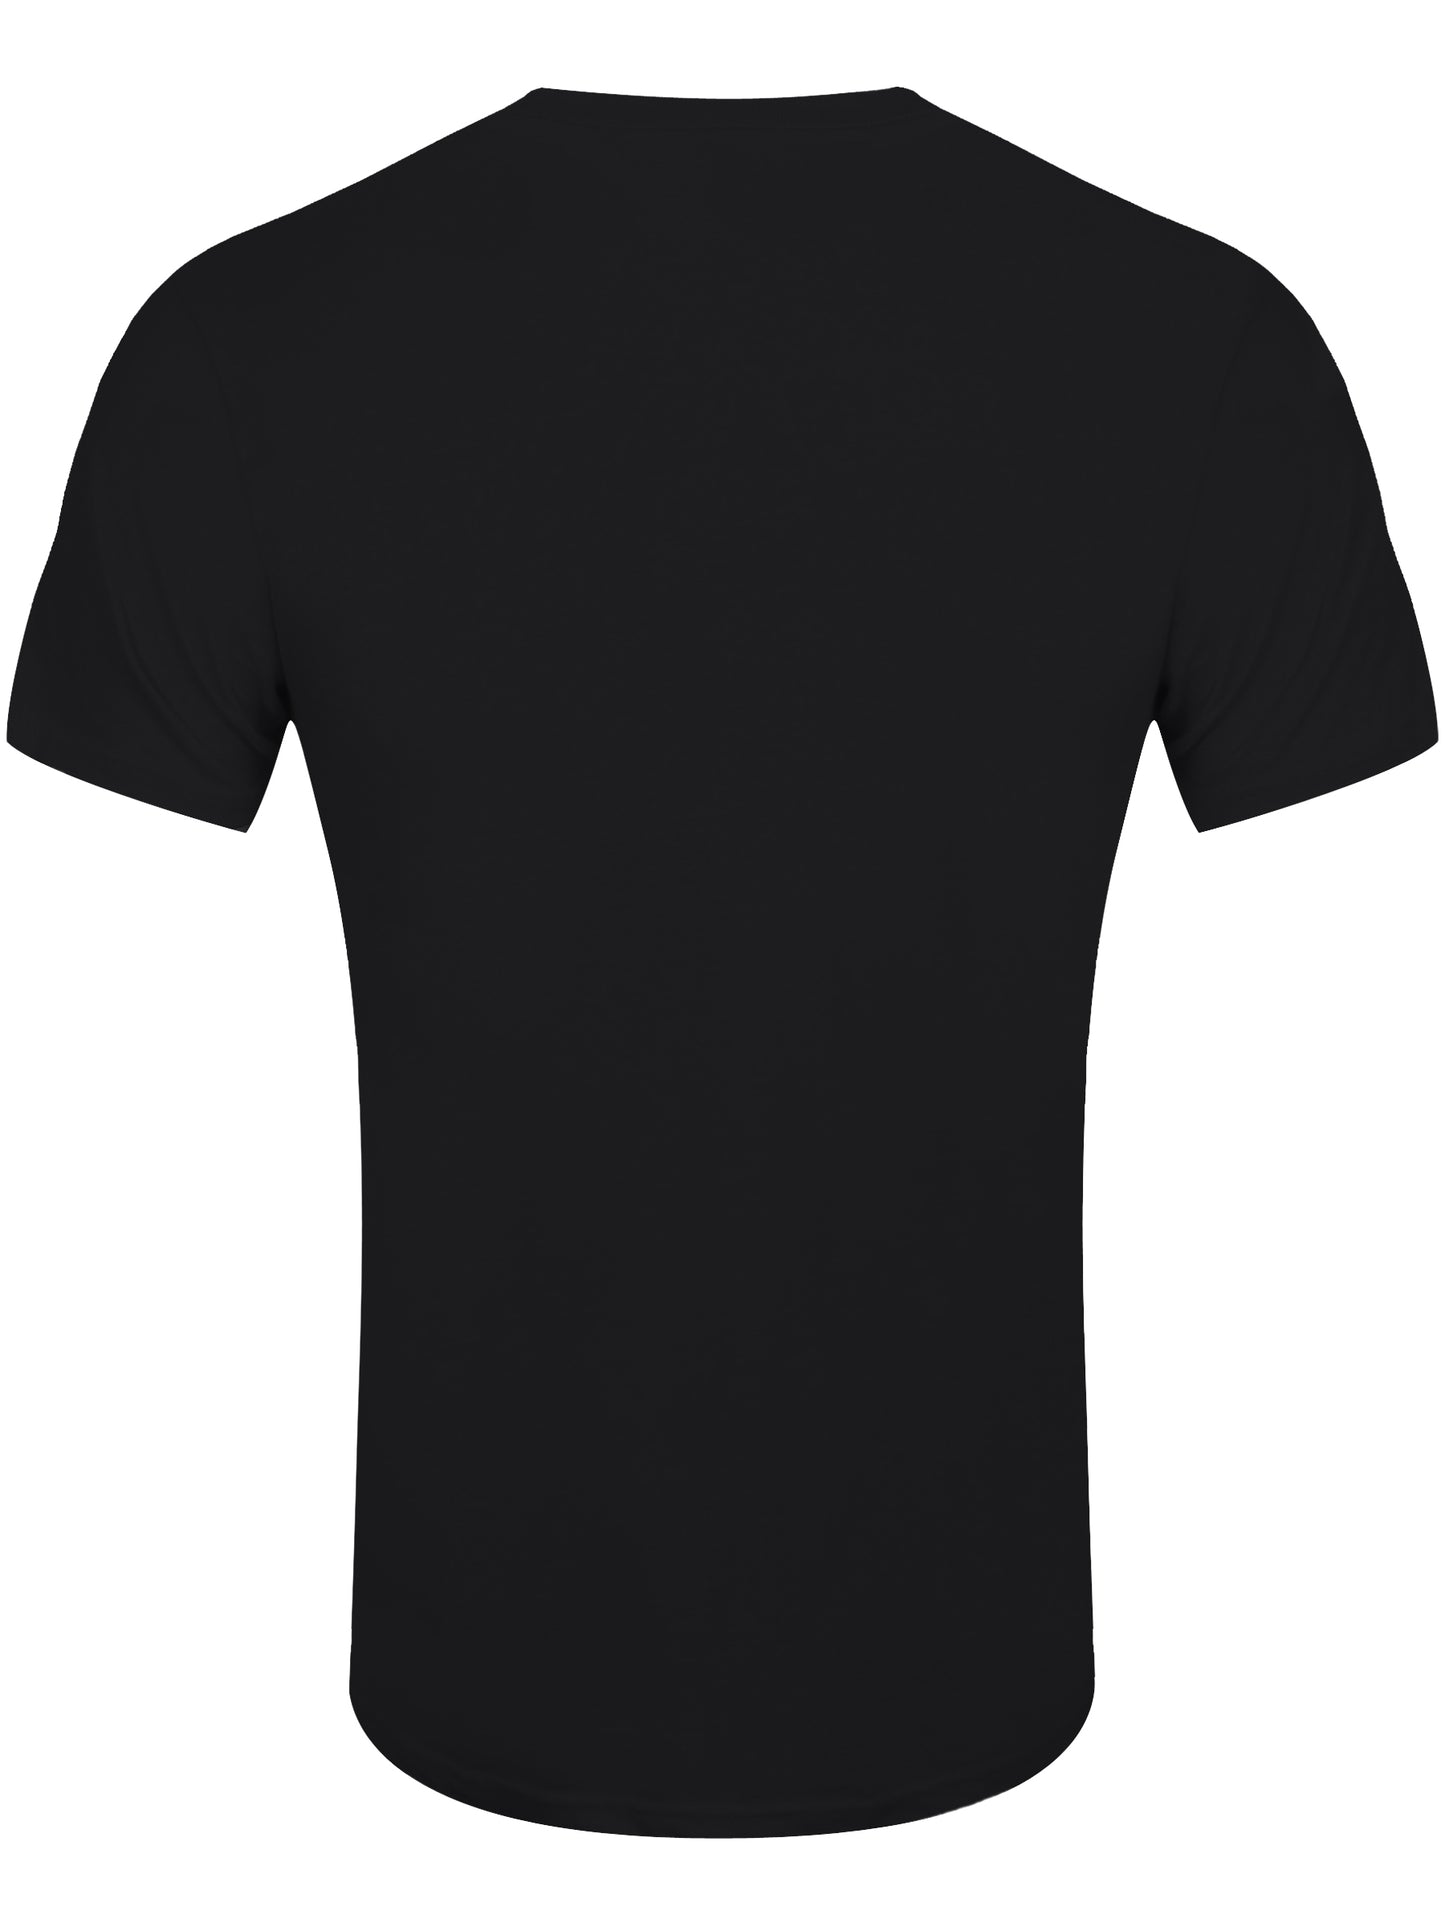 Motley Crue You Can't Kill Rock & Roll Men's Black T-Shirt